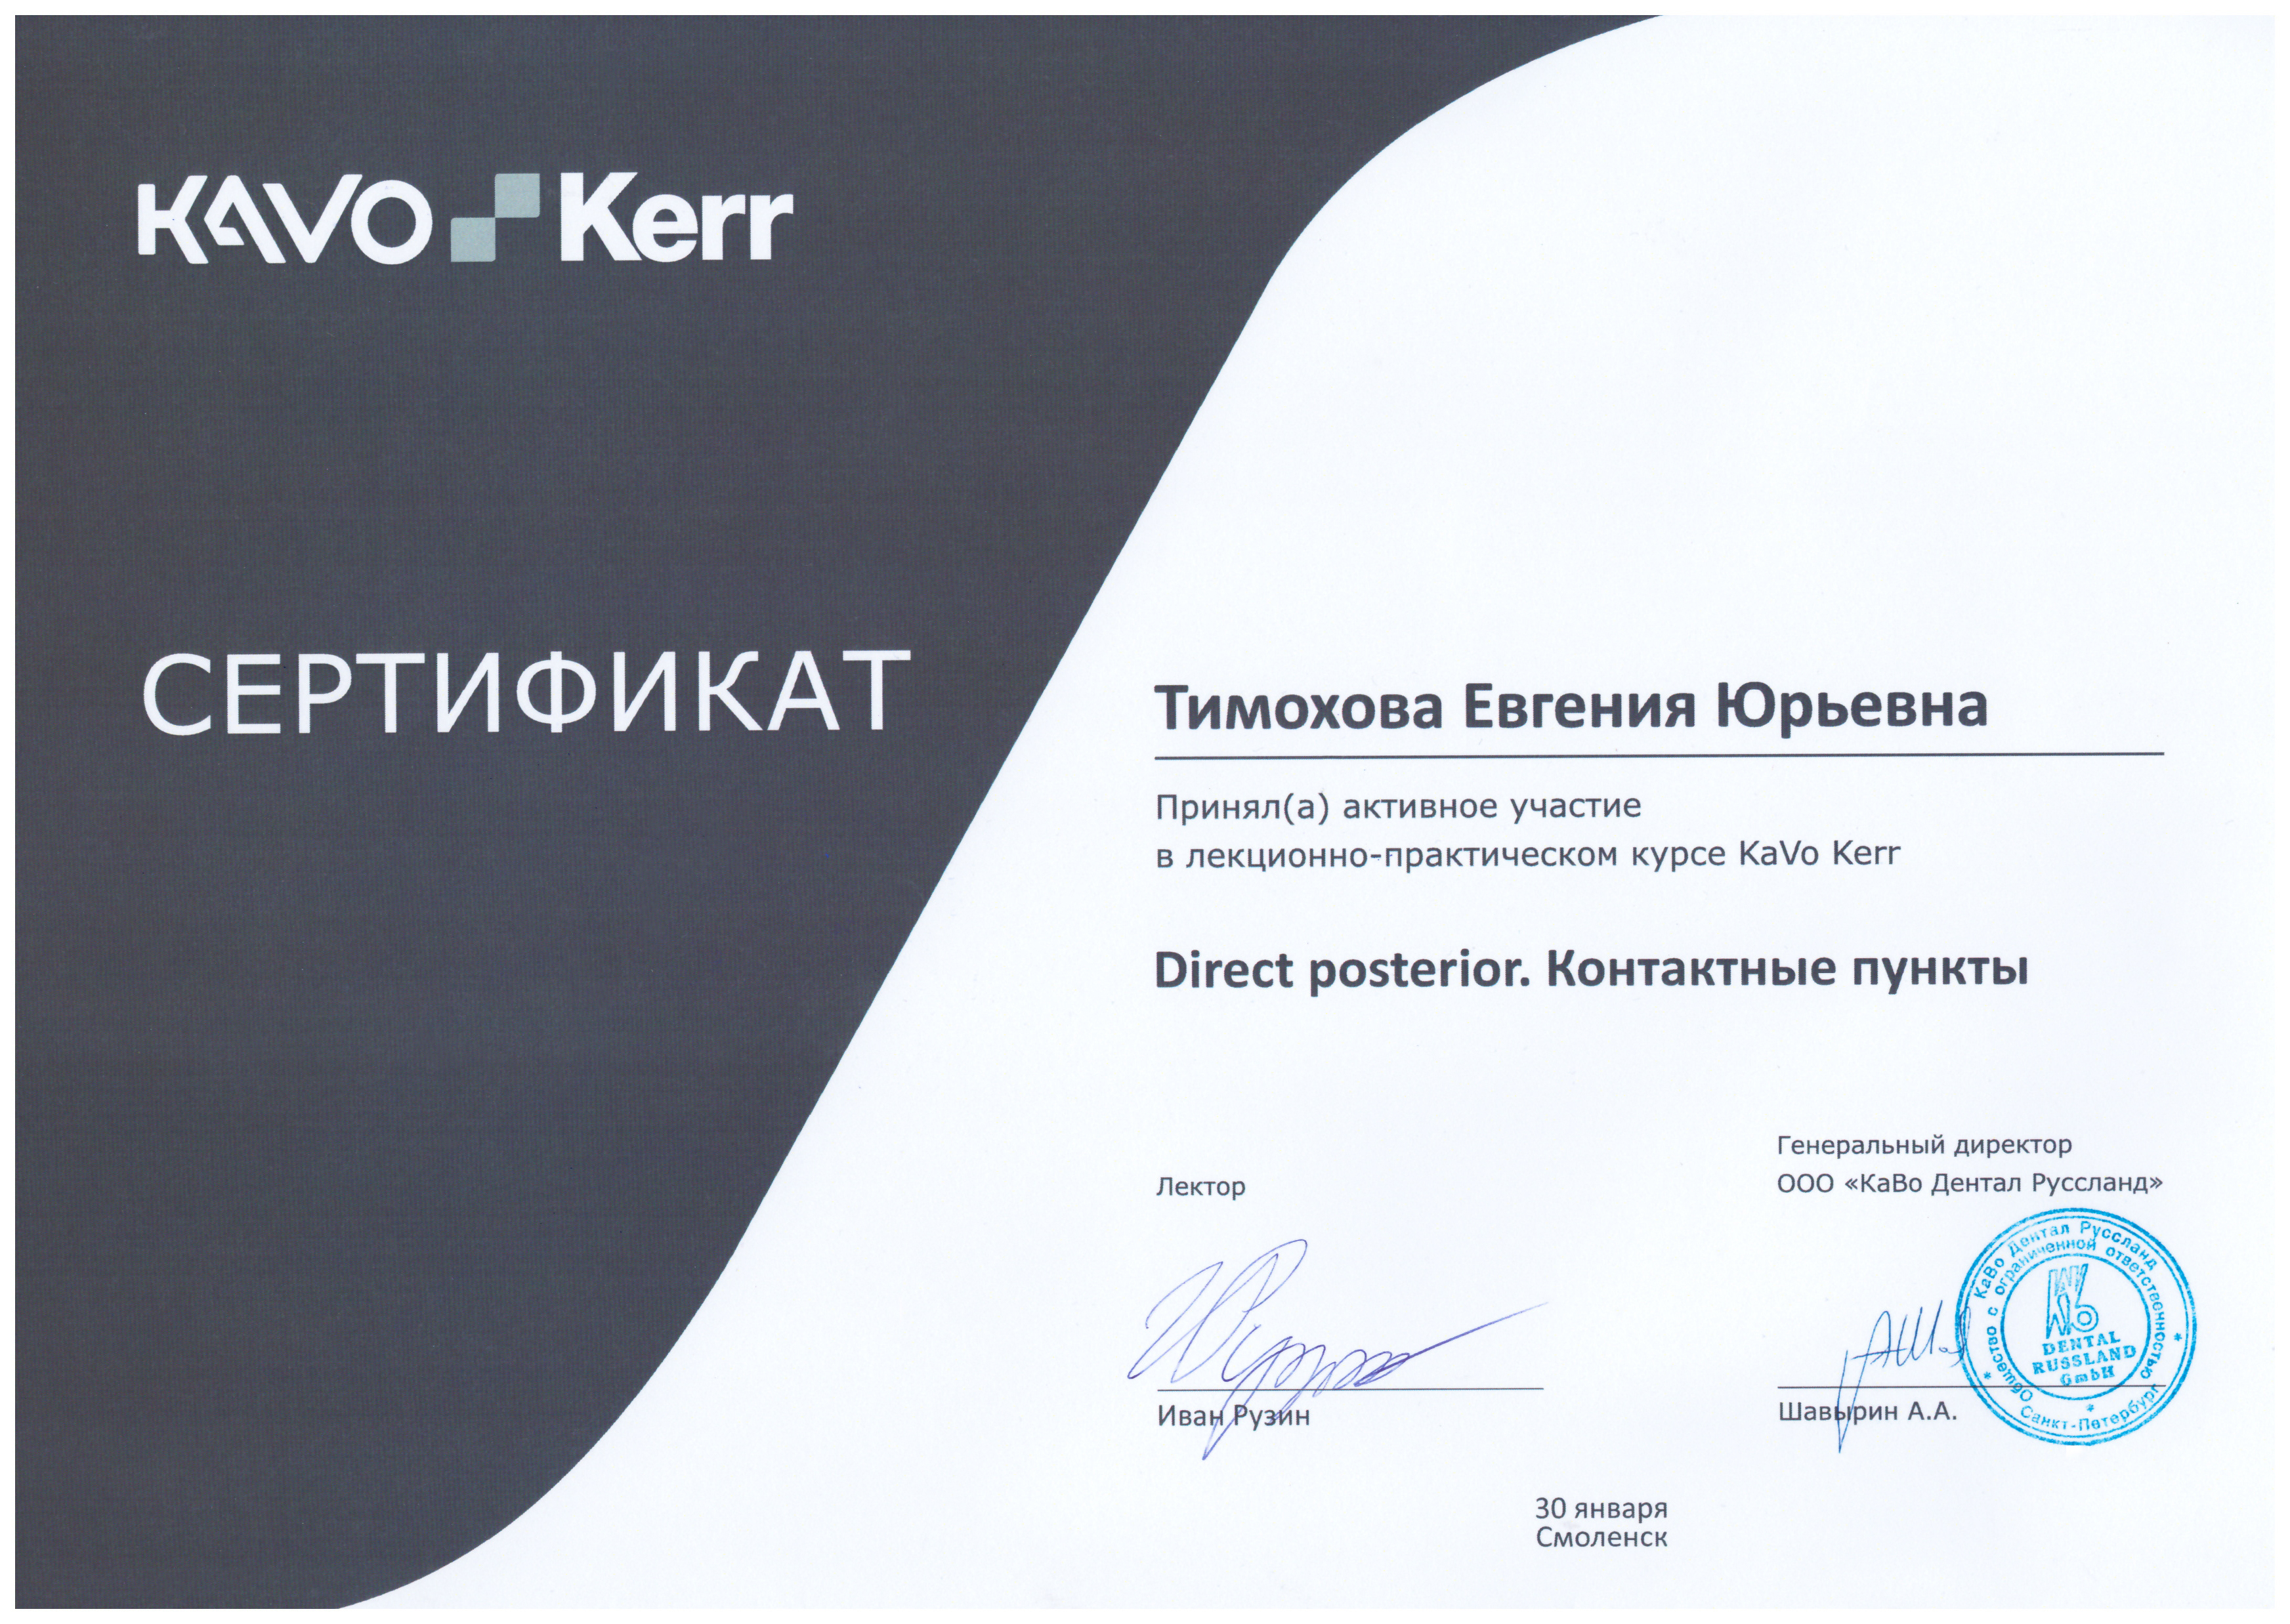 Лекционно-практический курс KaVo Kerr «Direct posterior. Контактные пункты», лектор Иван Рузин | Смоленск, 30 января 2021 г.